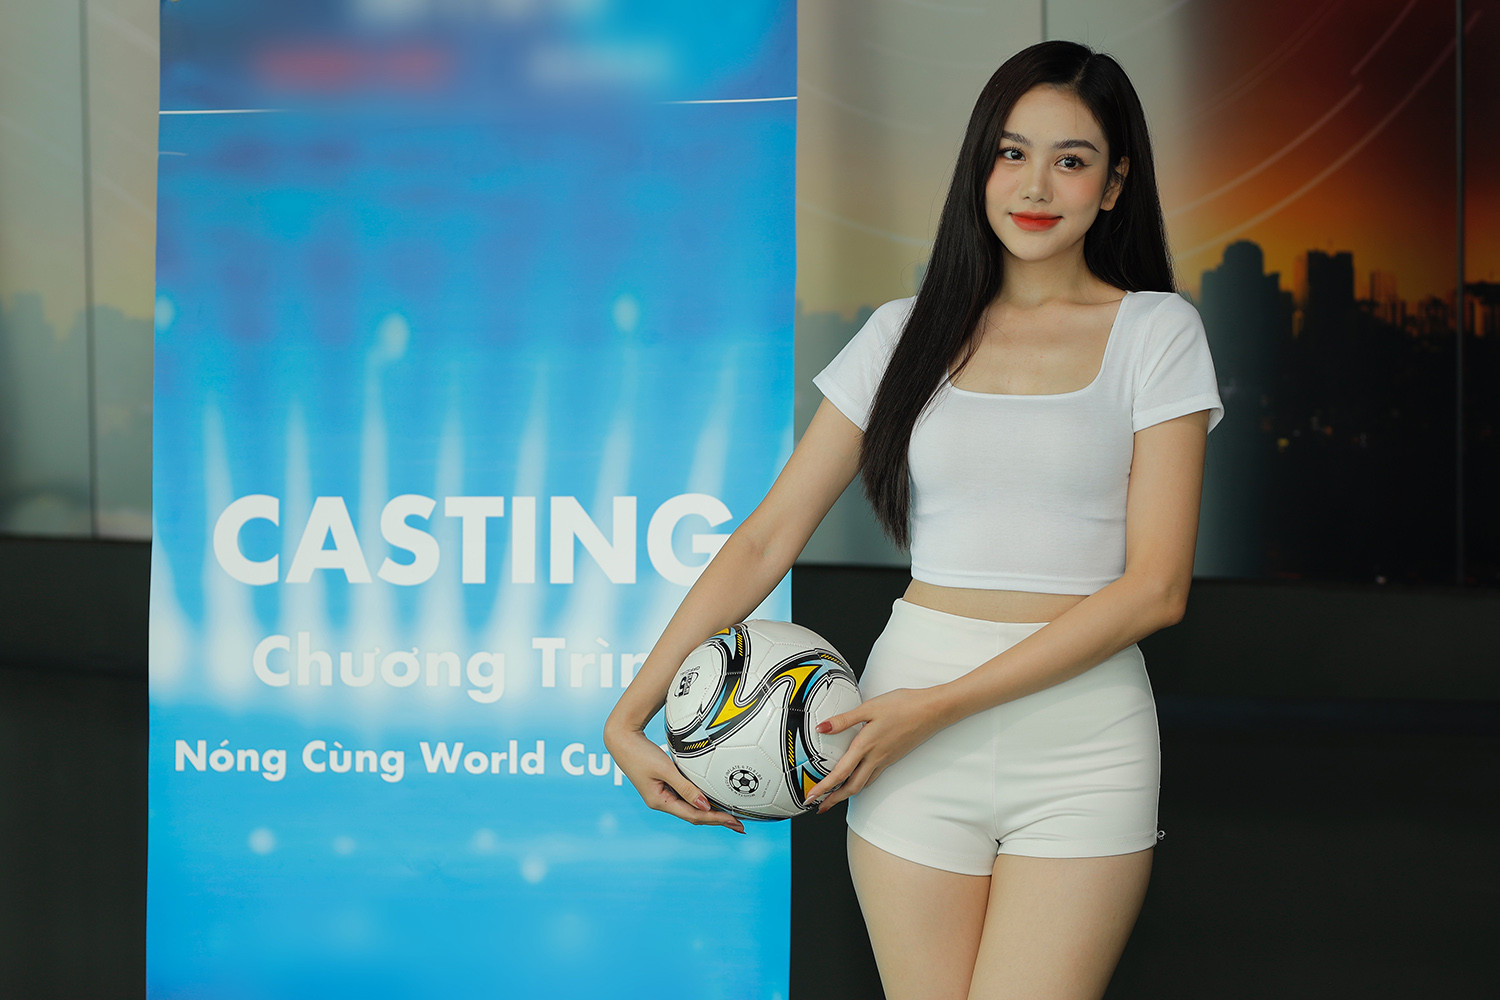 Cận cảnh nhan sắc xinh đẹp của hotgirl đại diện cho Pháp ở "Nóng cùng World Cup"